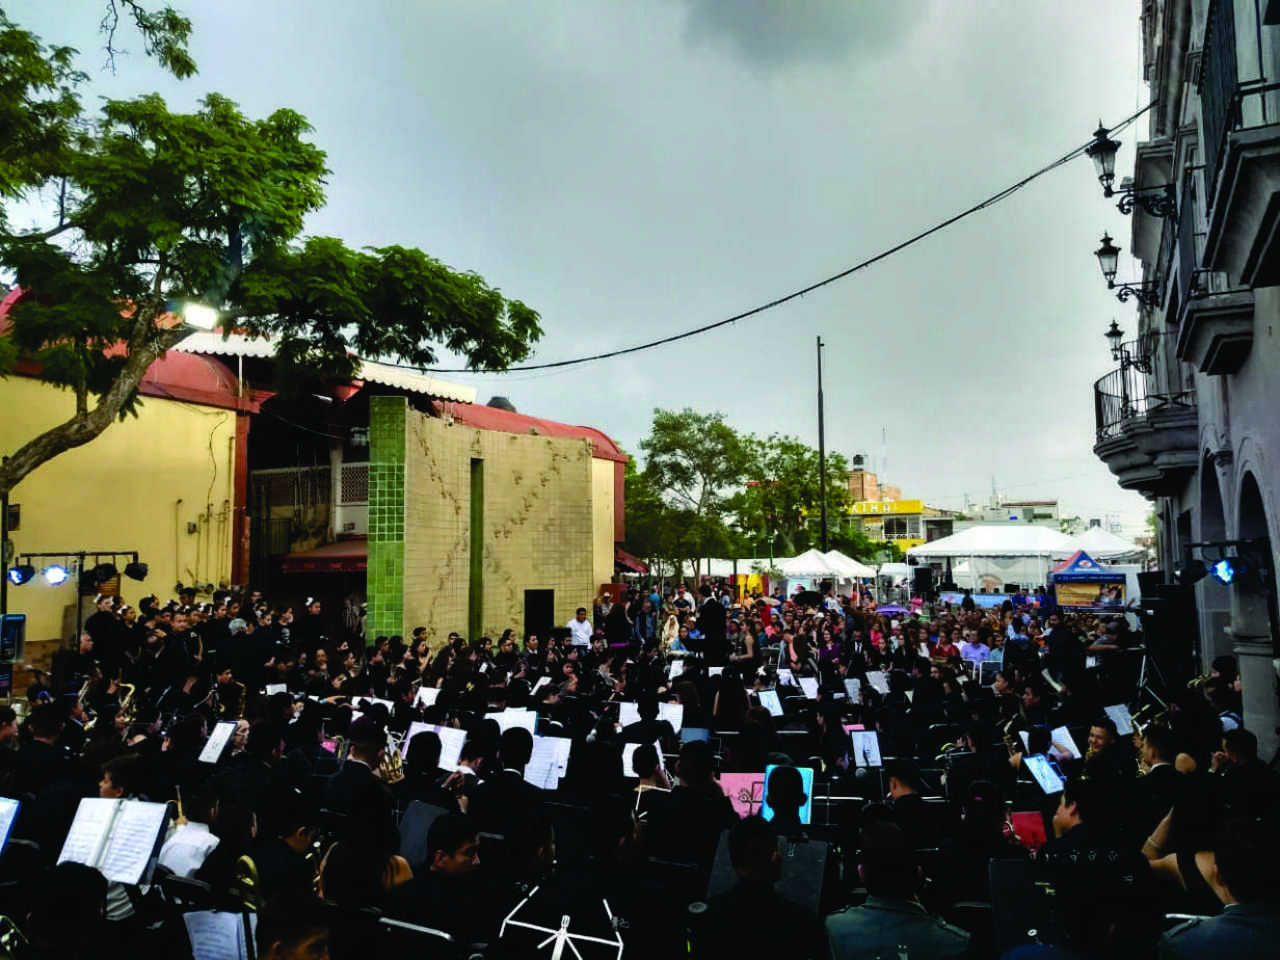 Unidos. Los niños de la Casa de la Música abren concierto en Tonalá, Jalisco. (CORTESÍA)